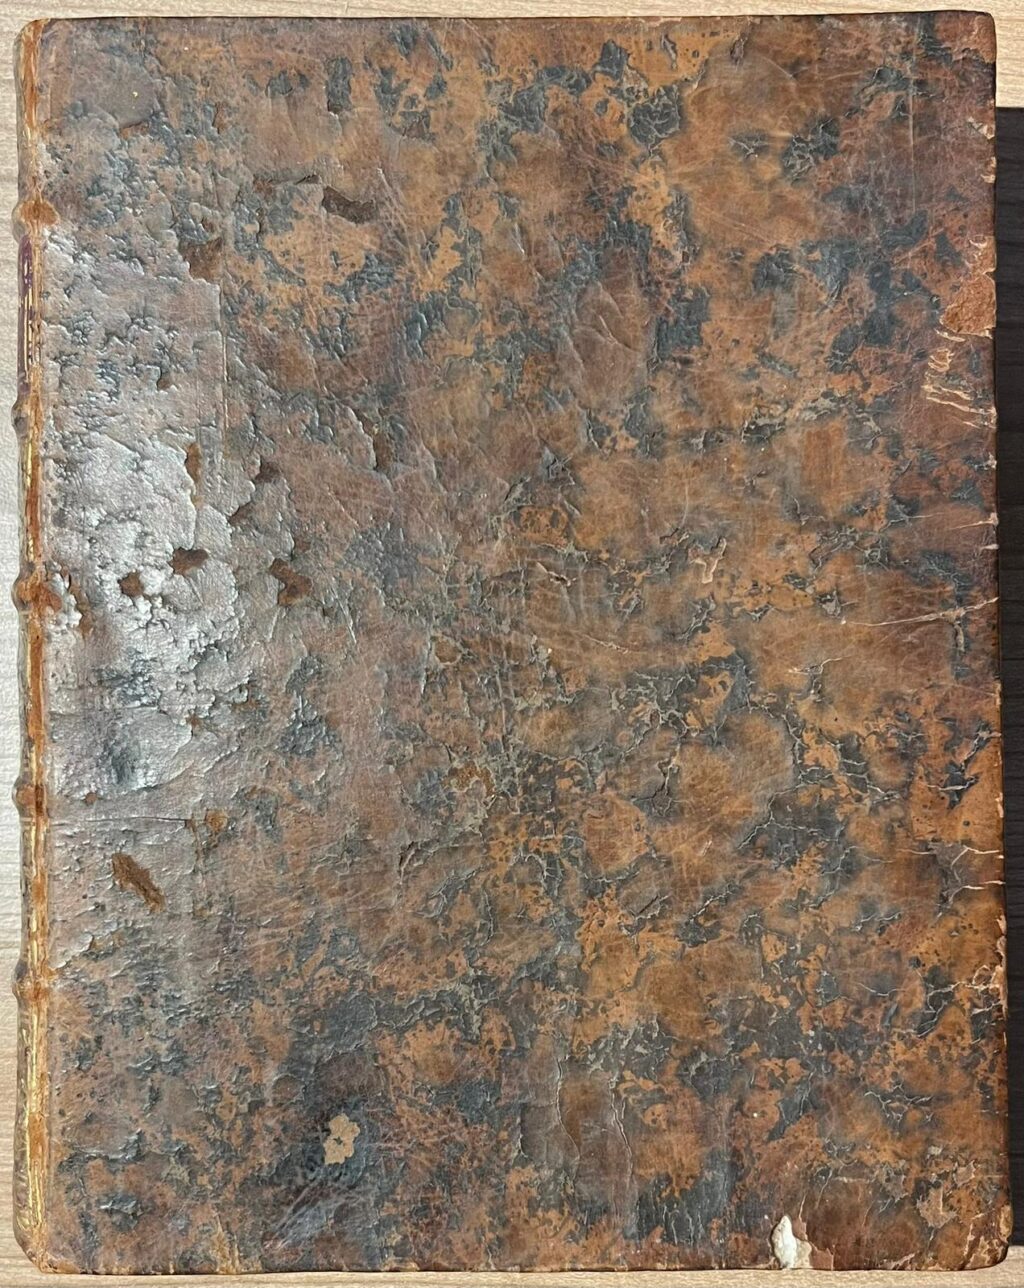 Women’s poetry, 1768, Van Merken | Het Nut der Tegenspoeden, Brieven, en andere Gedichten, Amsterdam, Pieter Meijer, 1762, [8] 344 [5] pp.